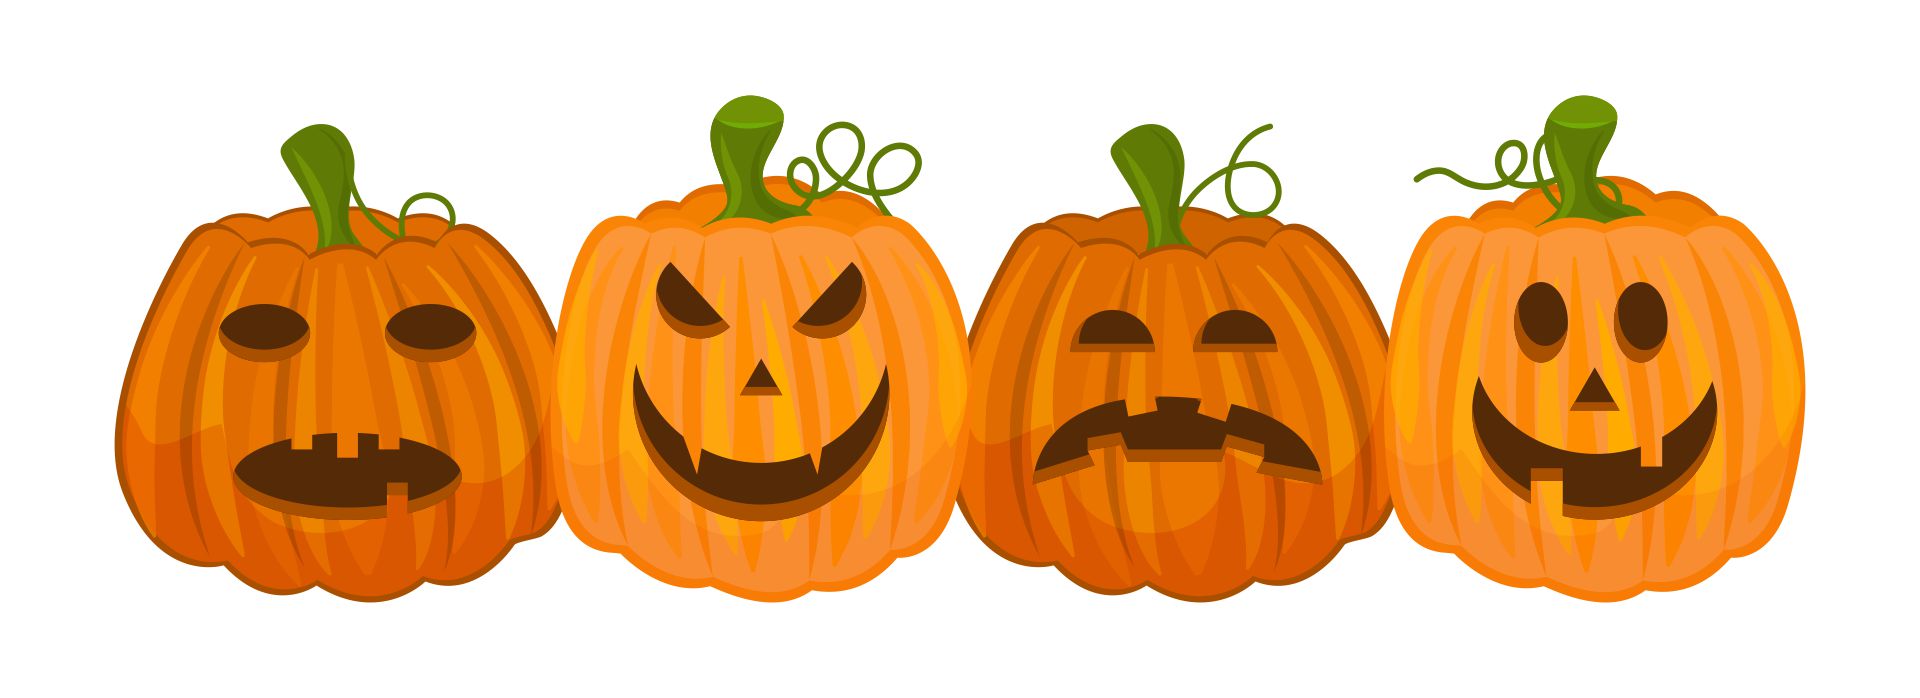 Halloween Pumpkin Patch Clip Art Free Images